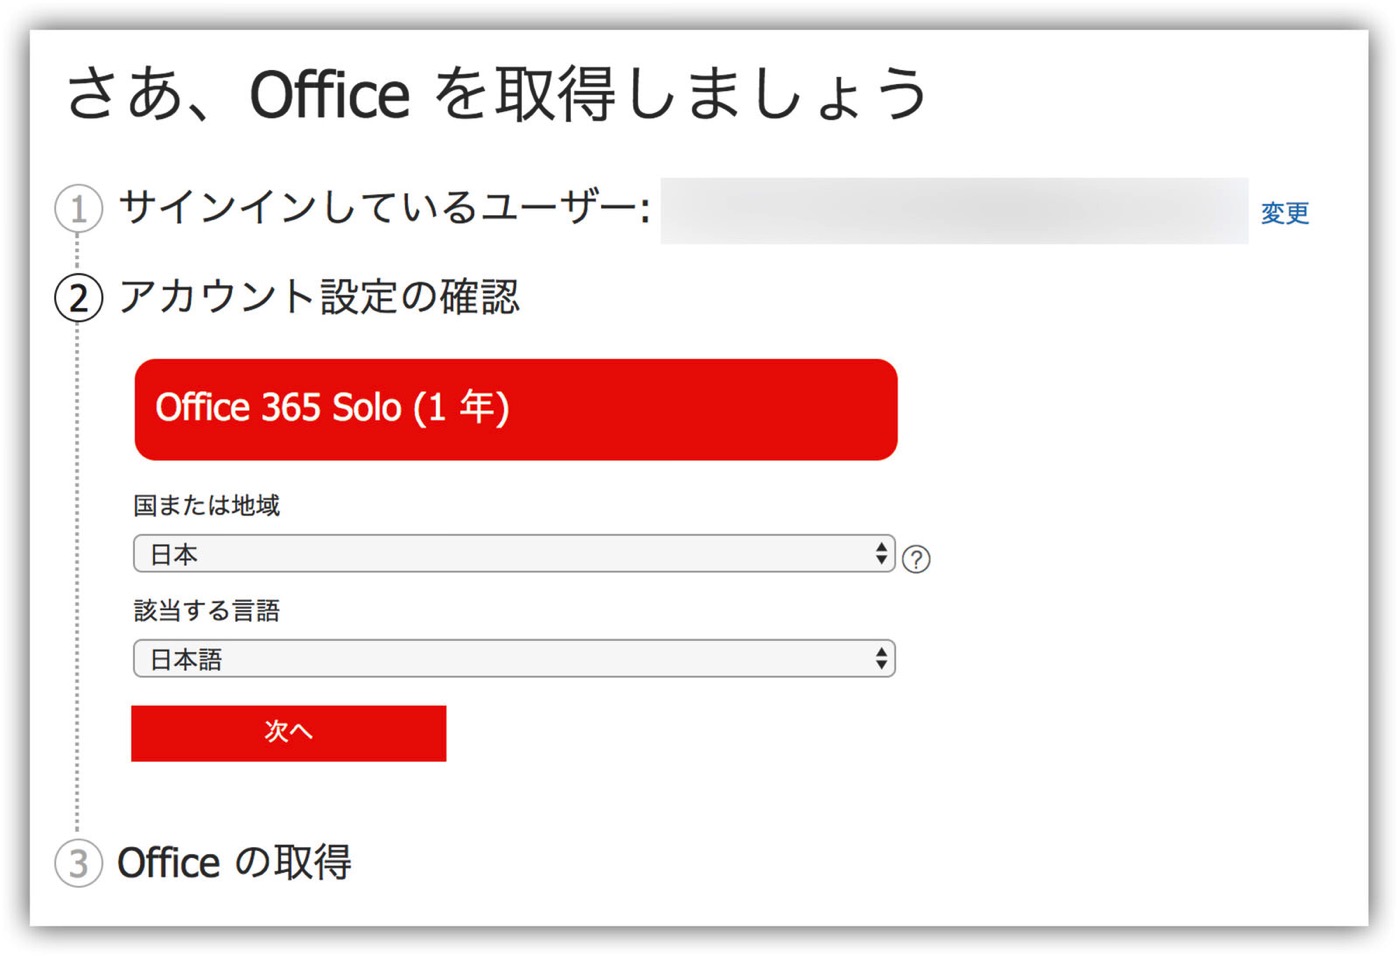 Microsoft Office 365 Solo -1-3